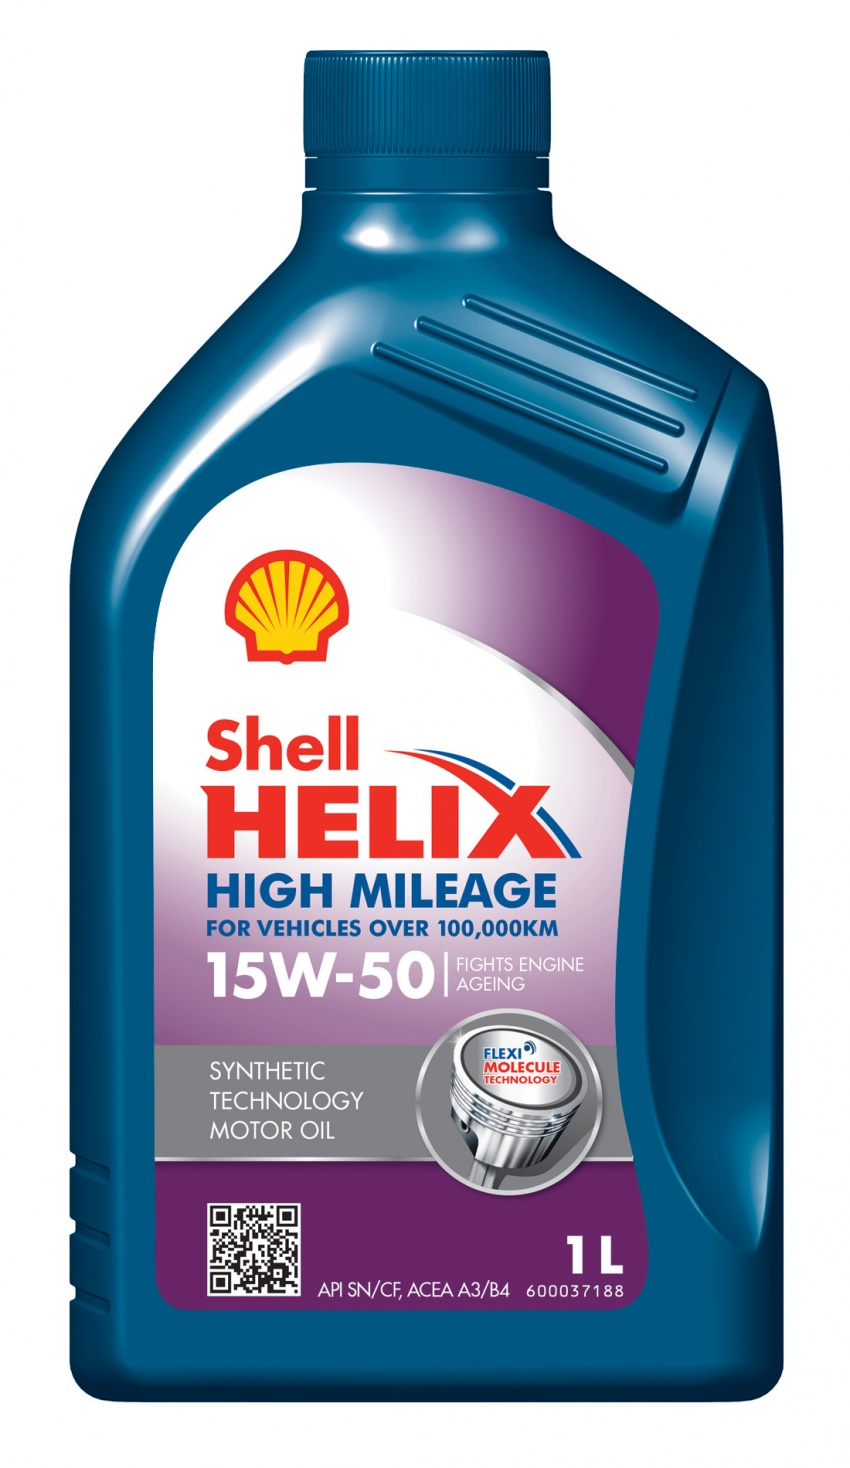 Shell Helix High Mileage 15W-50 khusus untuk kereta lama dilancarkan di Malaysia – RM148 bagi botol 4L 616285